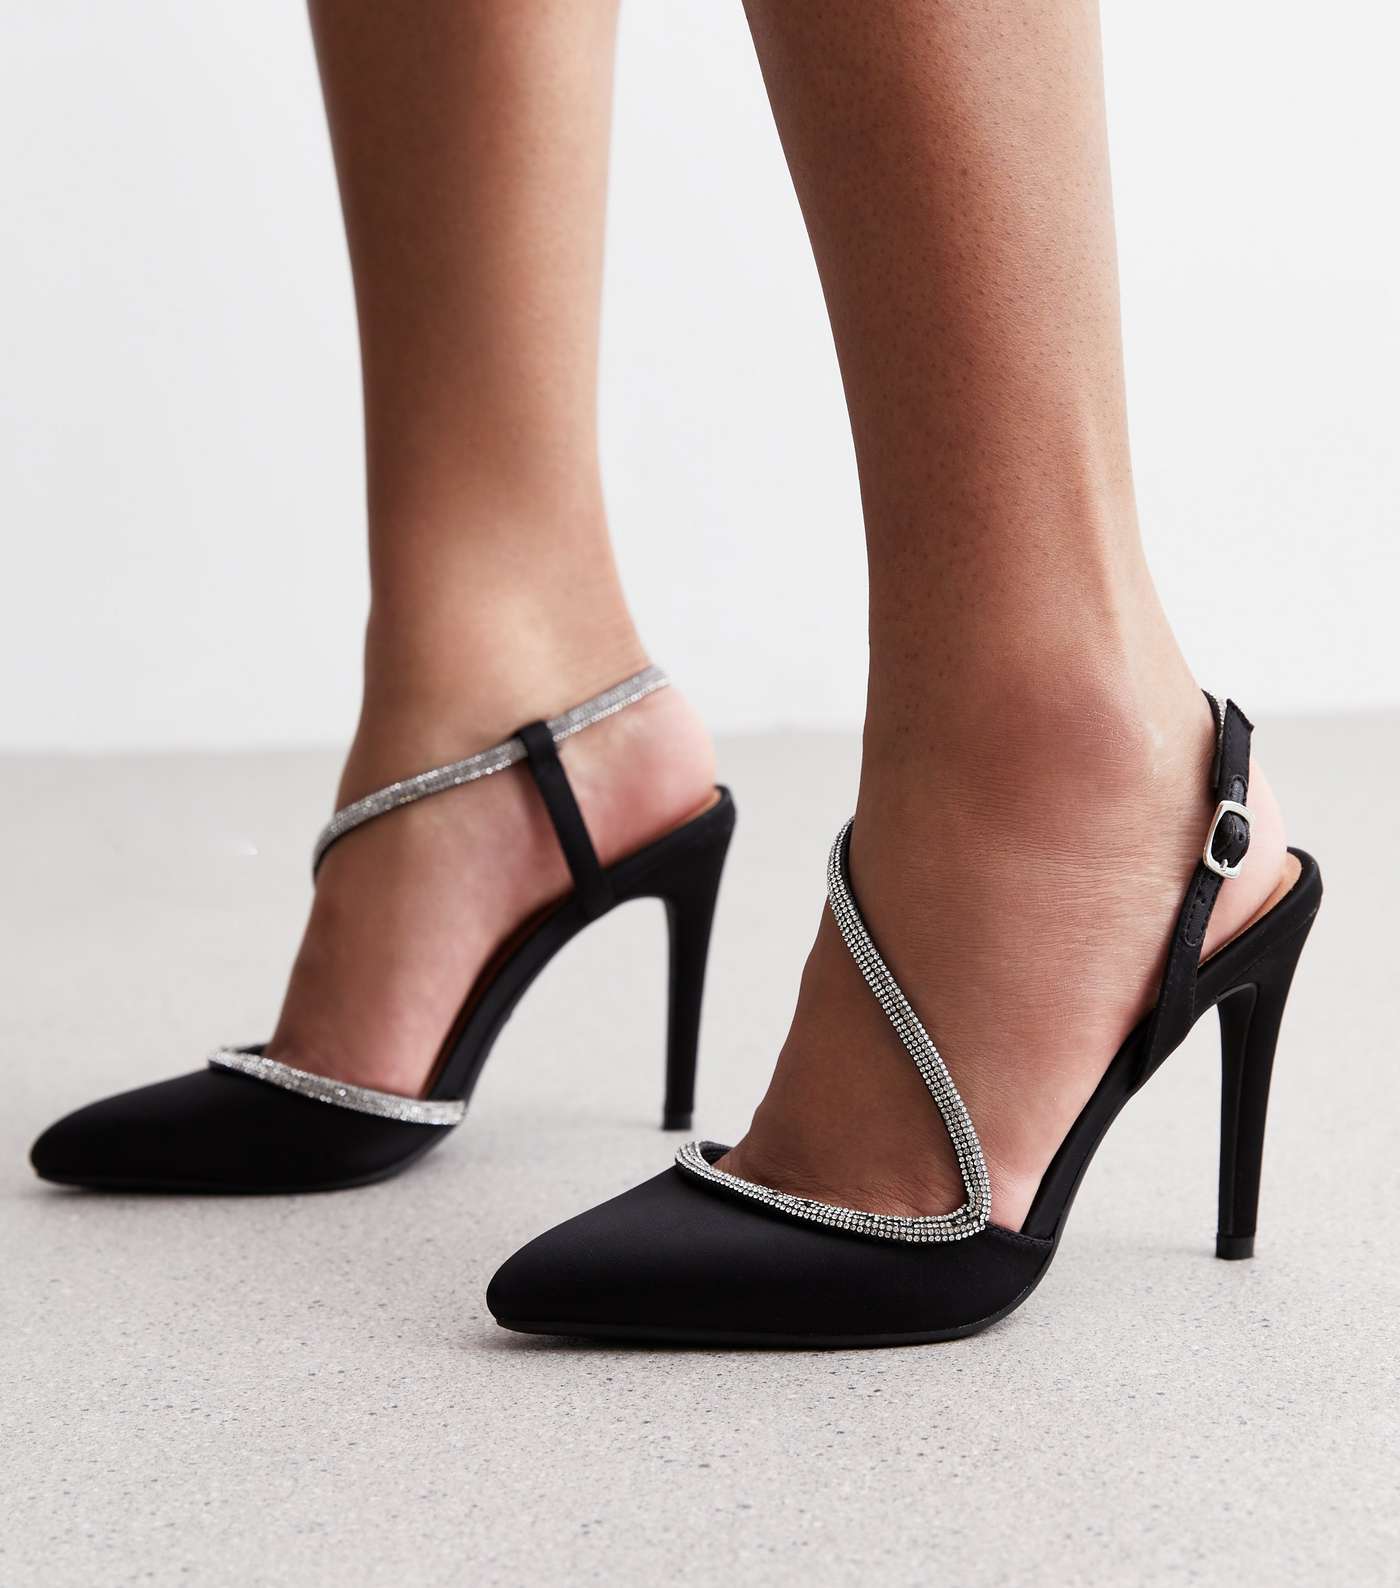 Black Satin Diamanté Embellished Stiletto Heel Court Shoes Image 2